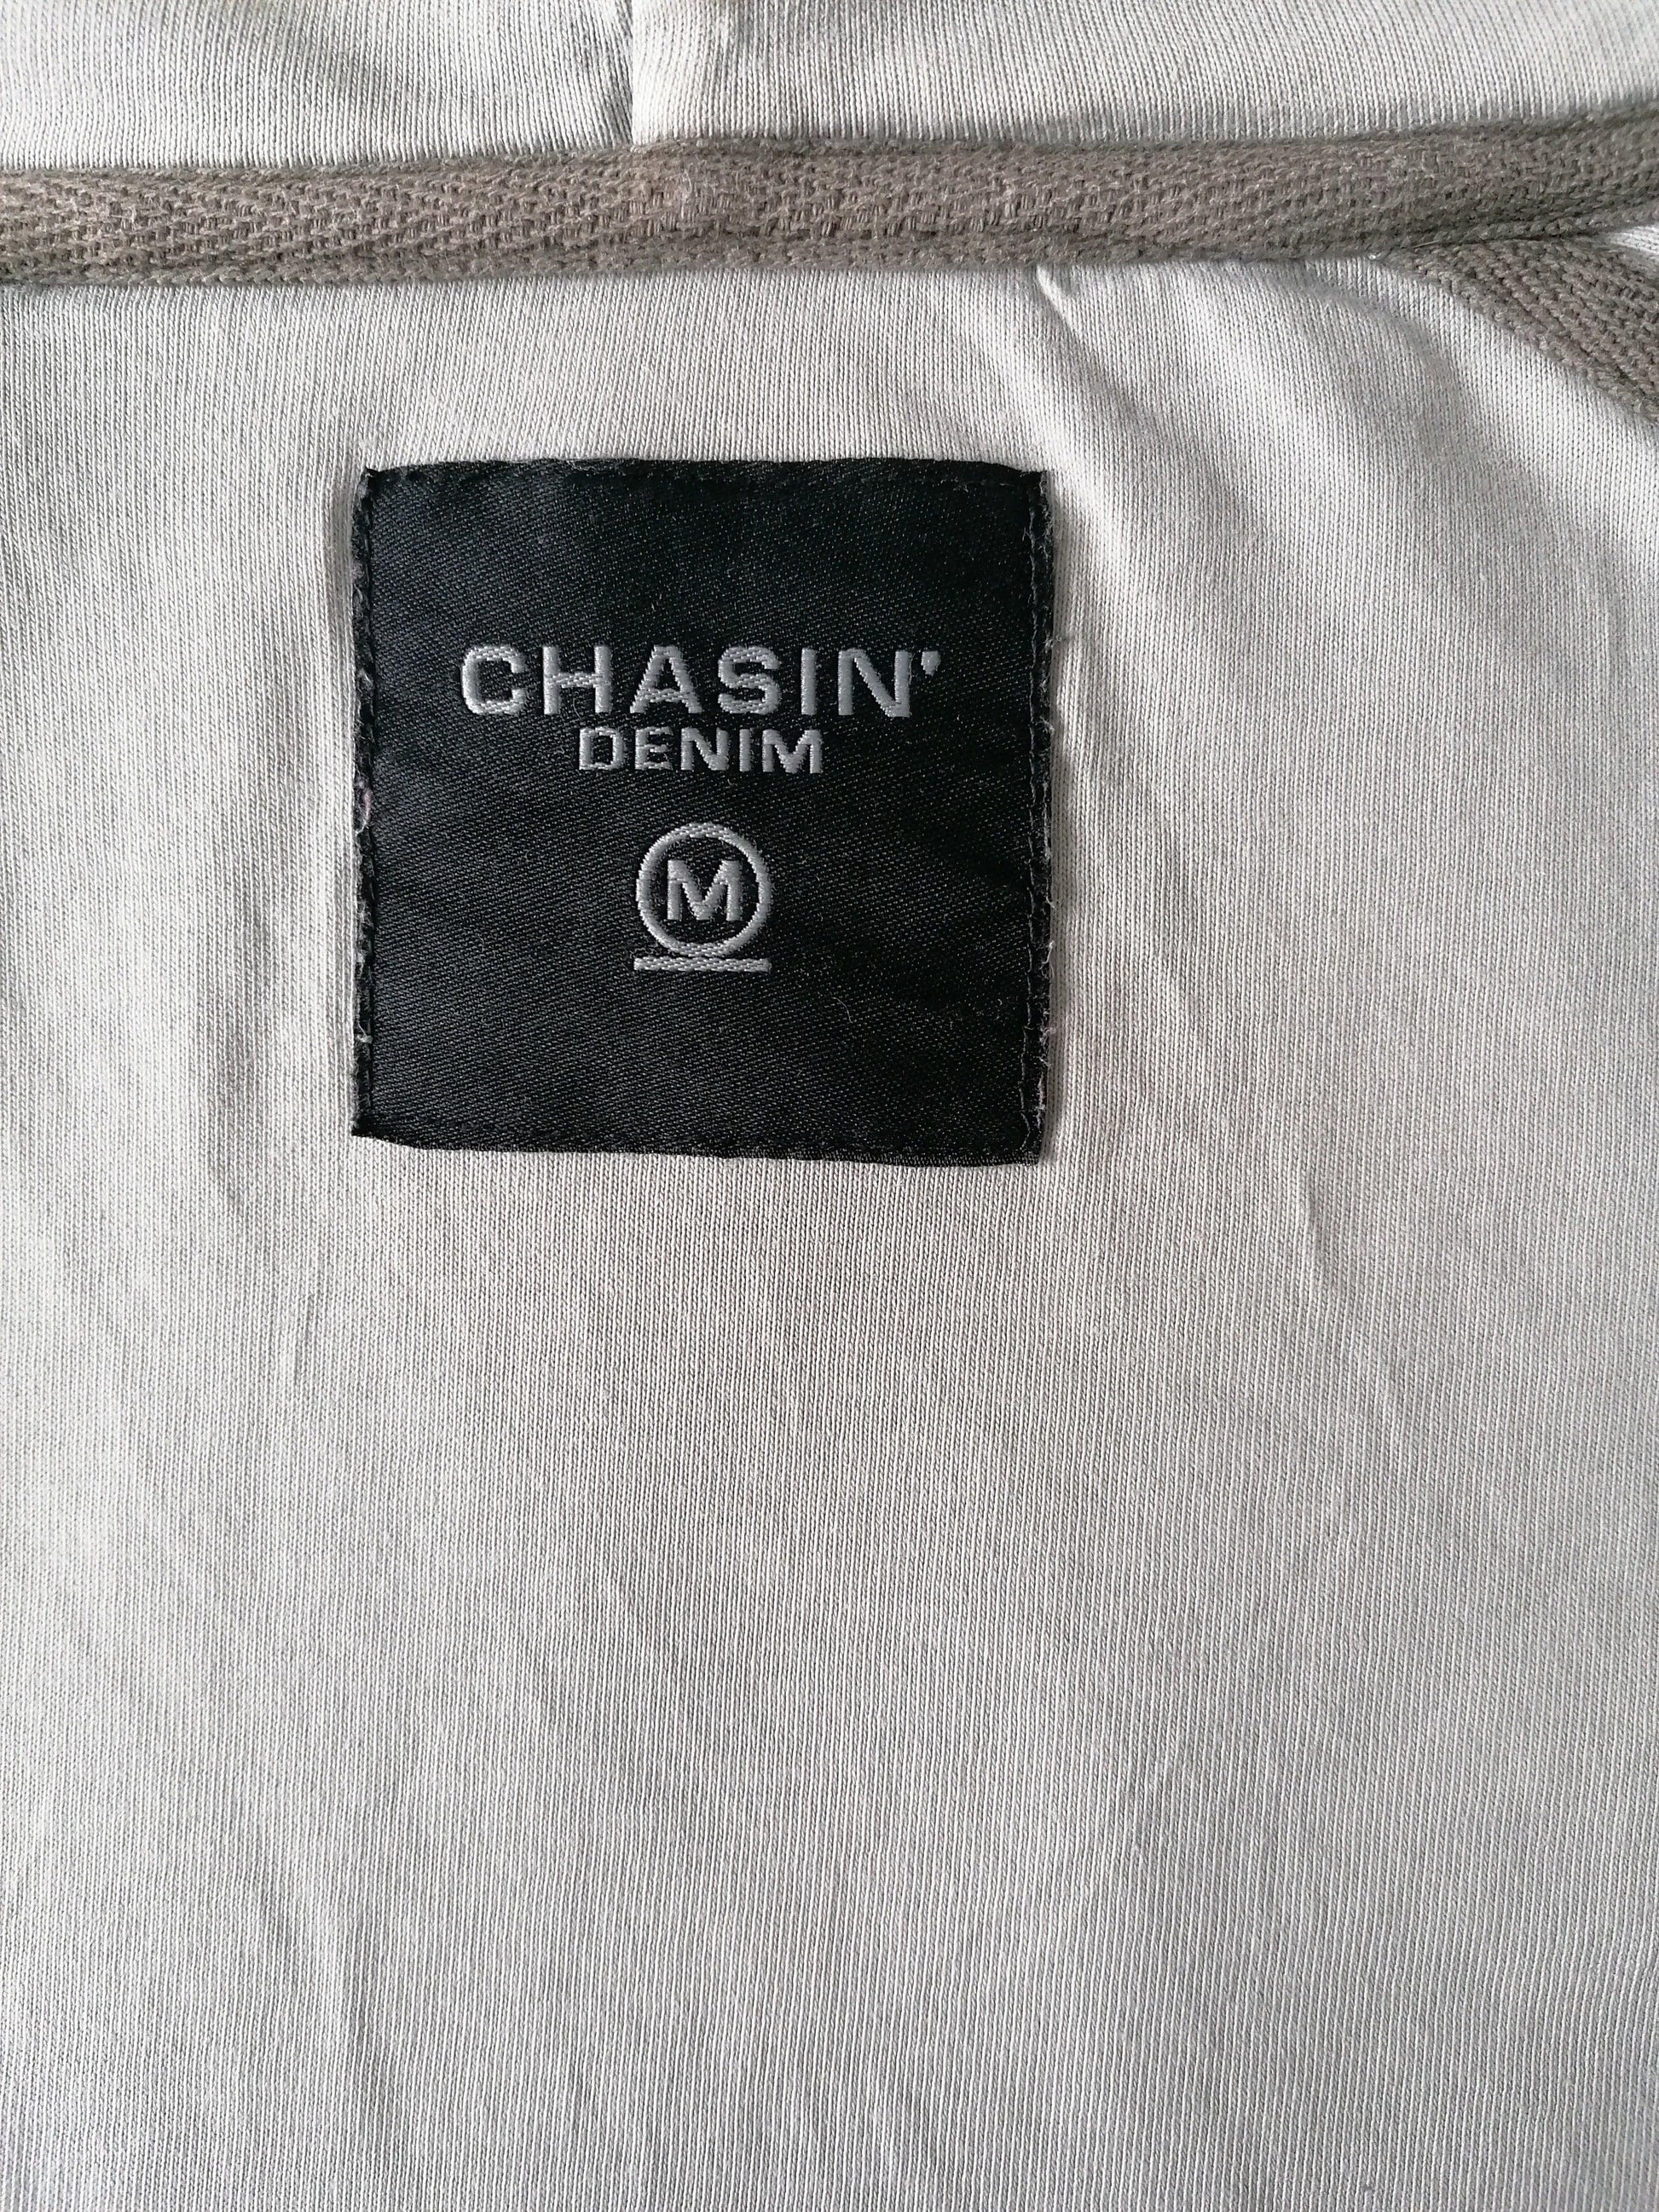 Chasin Vest met capuchon. Grijs met opdruk. Maat M. - EcoGents